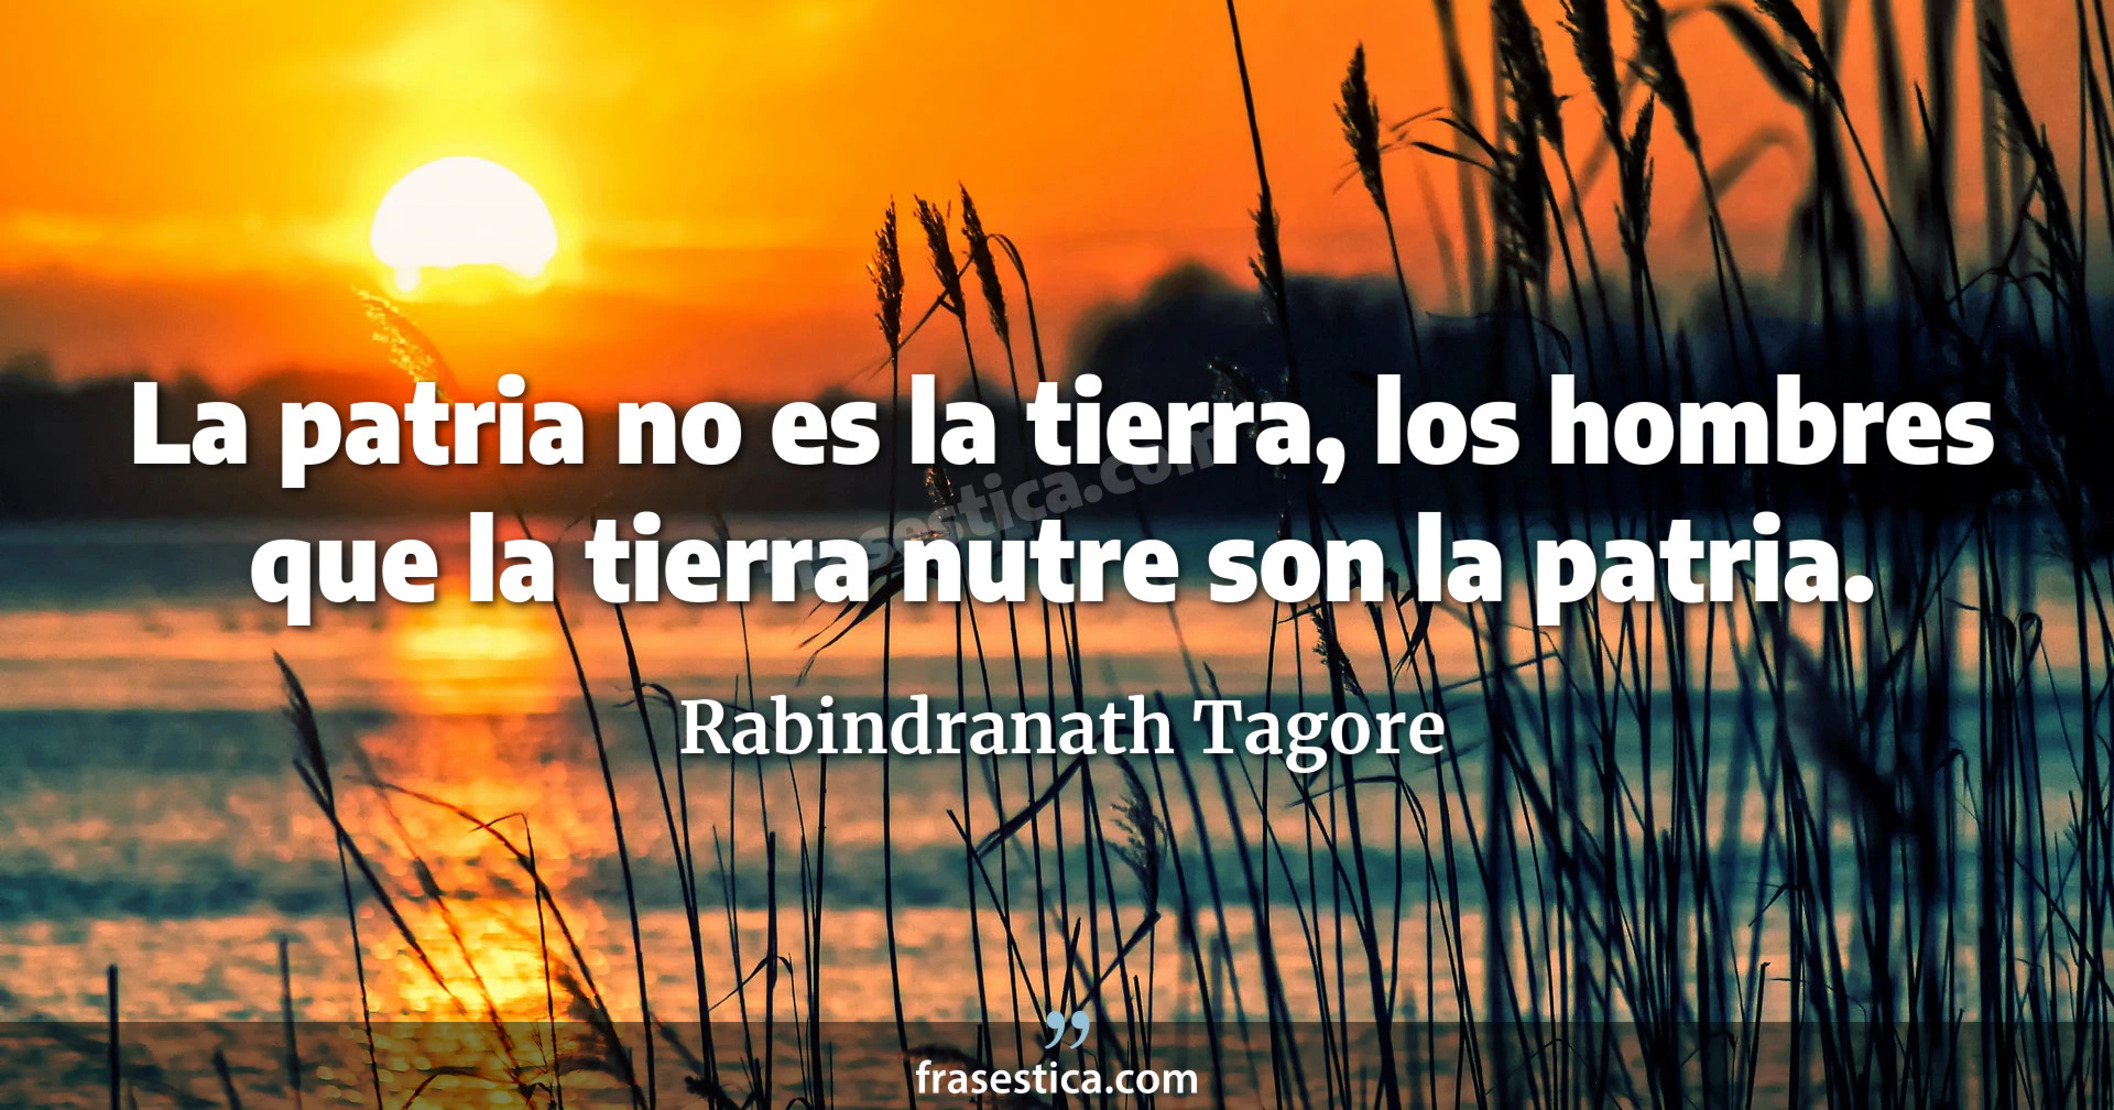 La patria no es la tierra, los hombres que la tierra nutre son la patria.  - Rabindranath Tagore